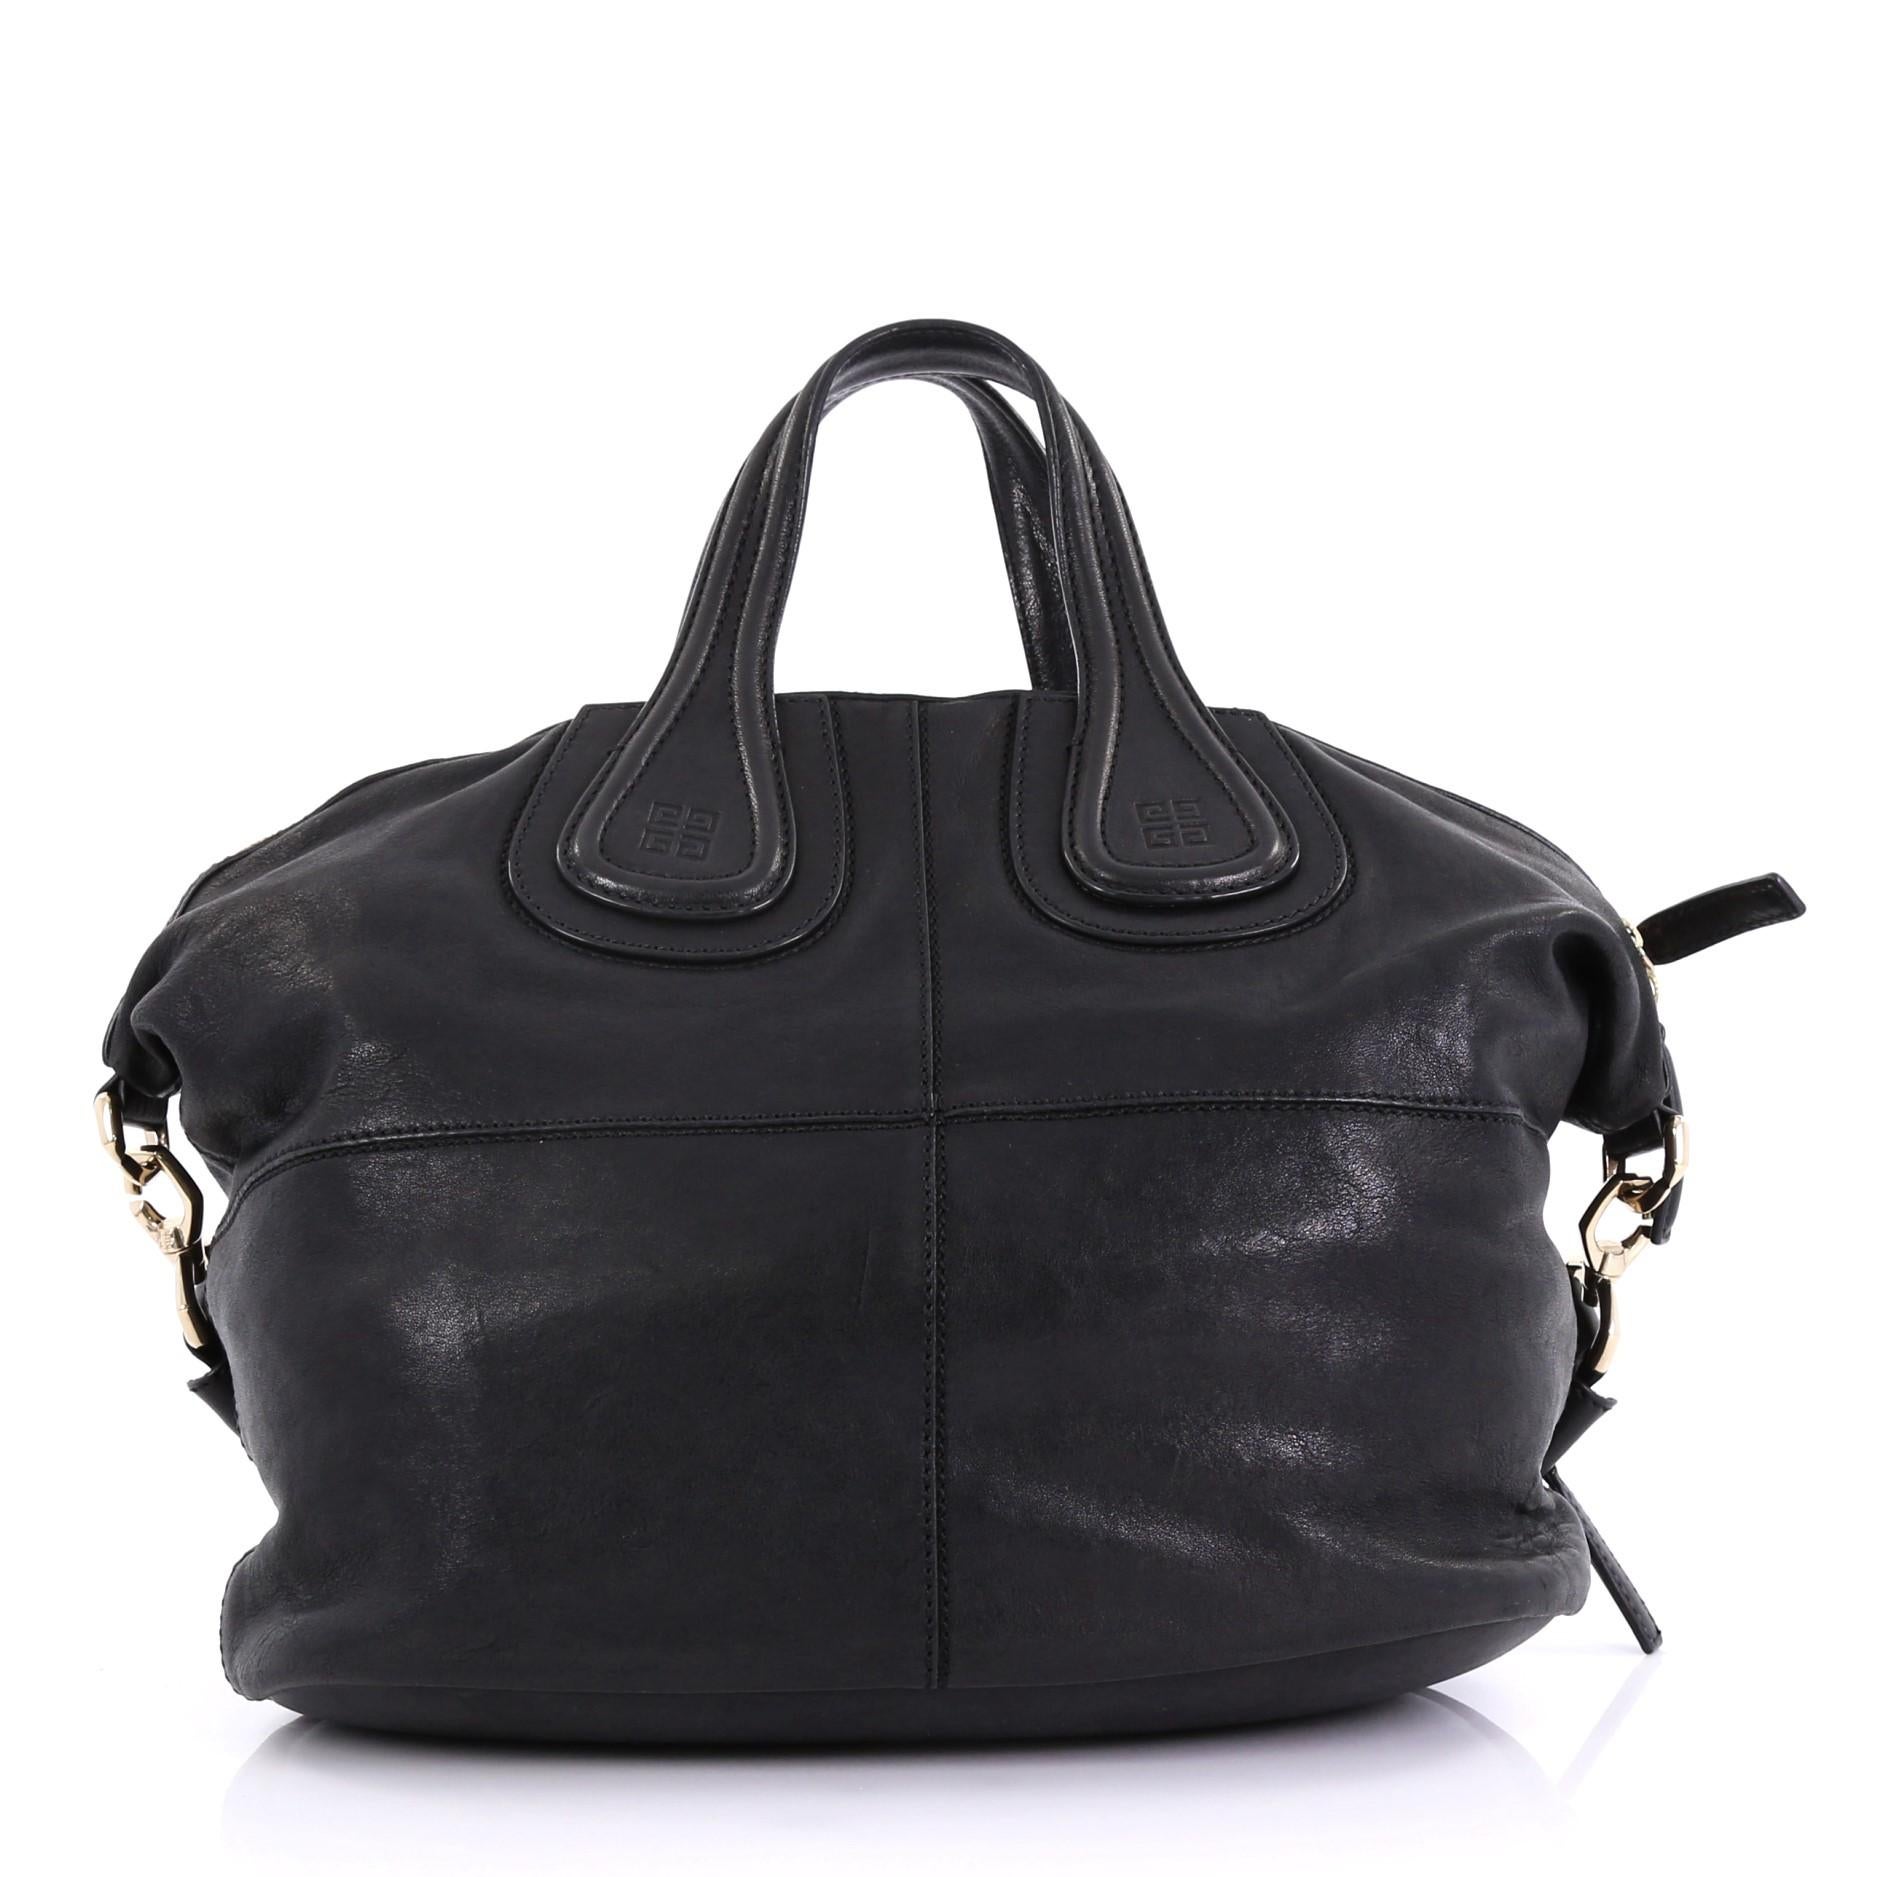 Black Givenchy Nightingale Satchel Leather Medium